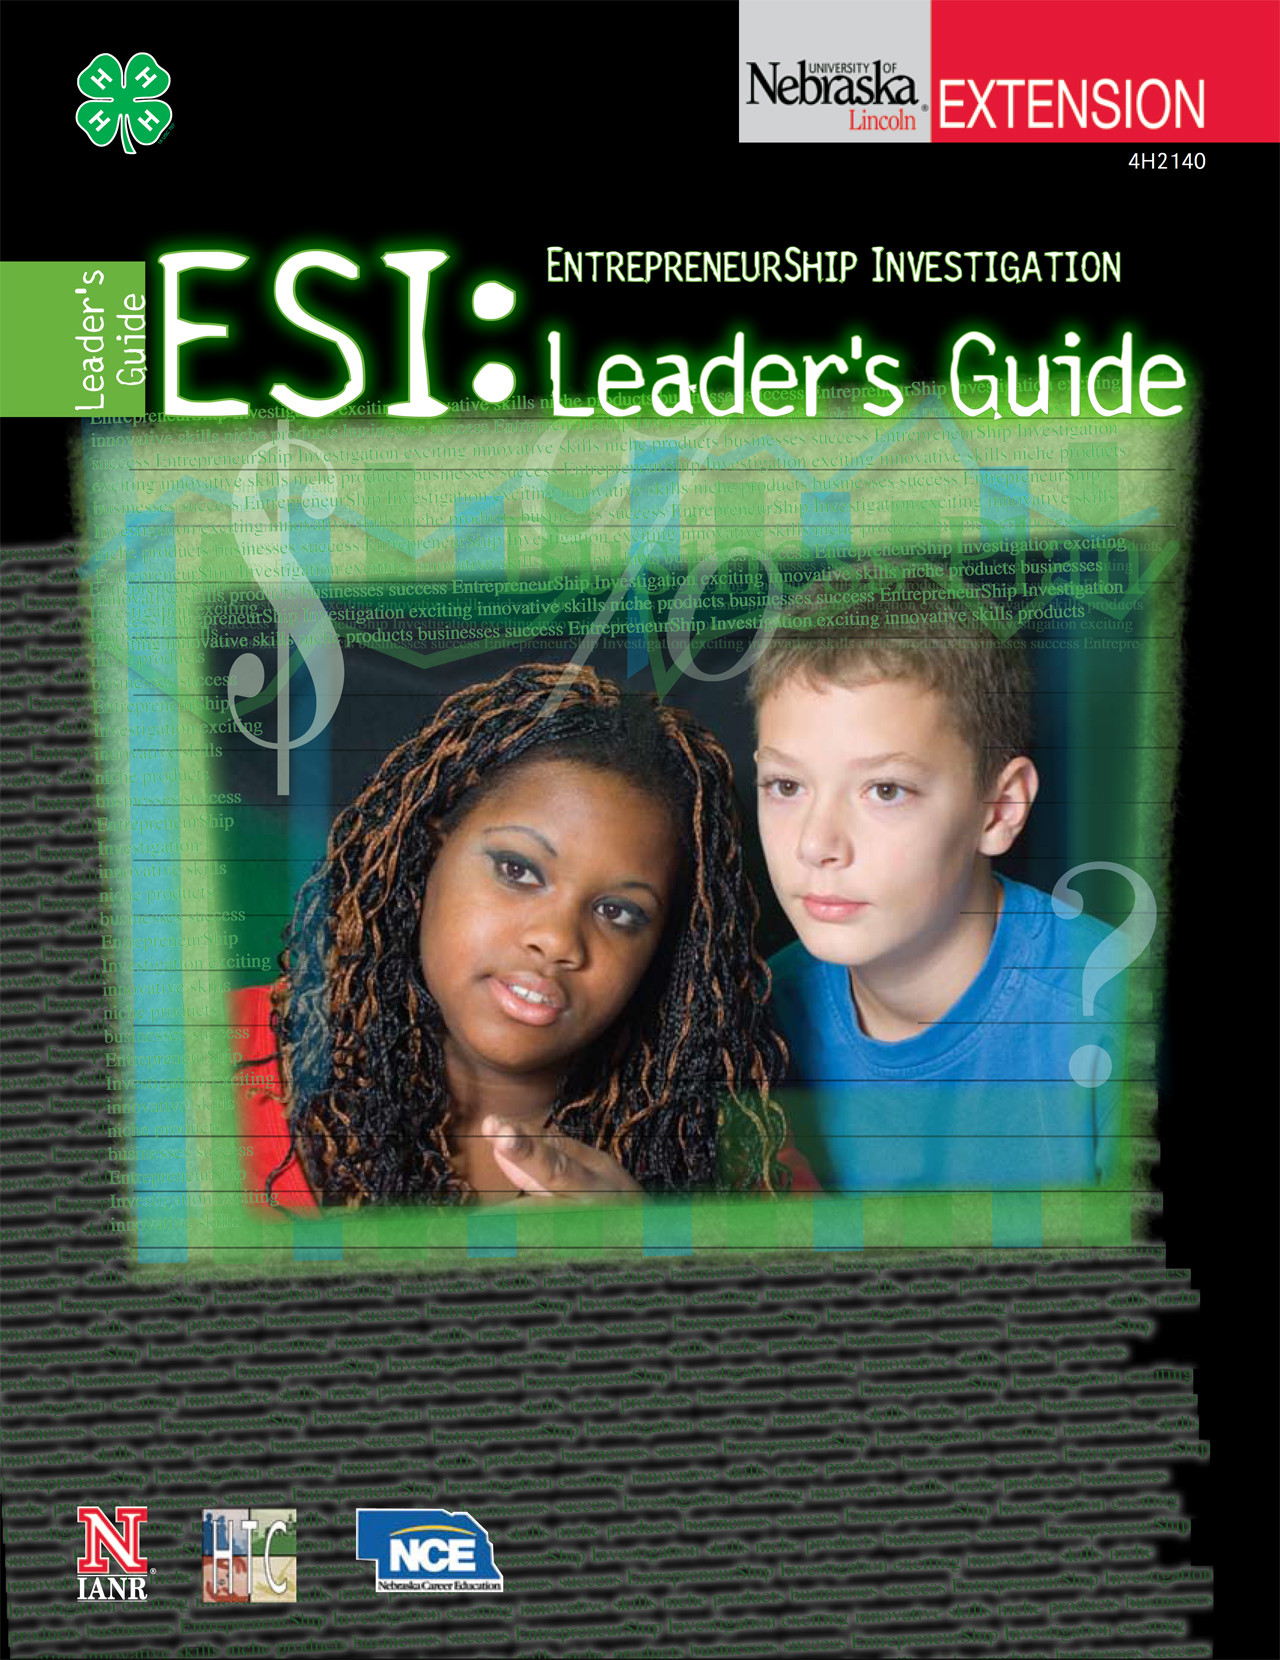 EntrepreneurShip Investigation: Leader's Guide